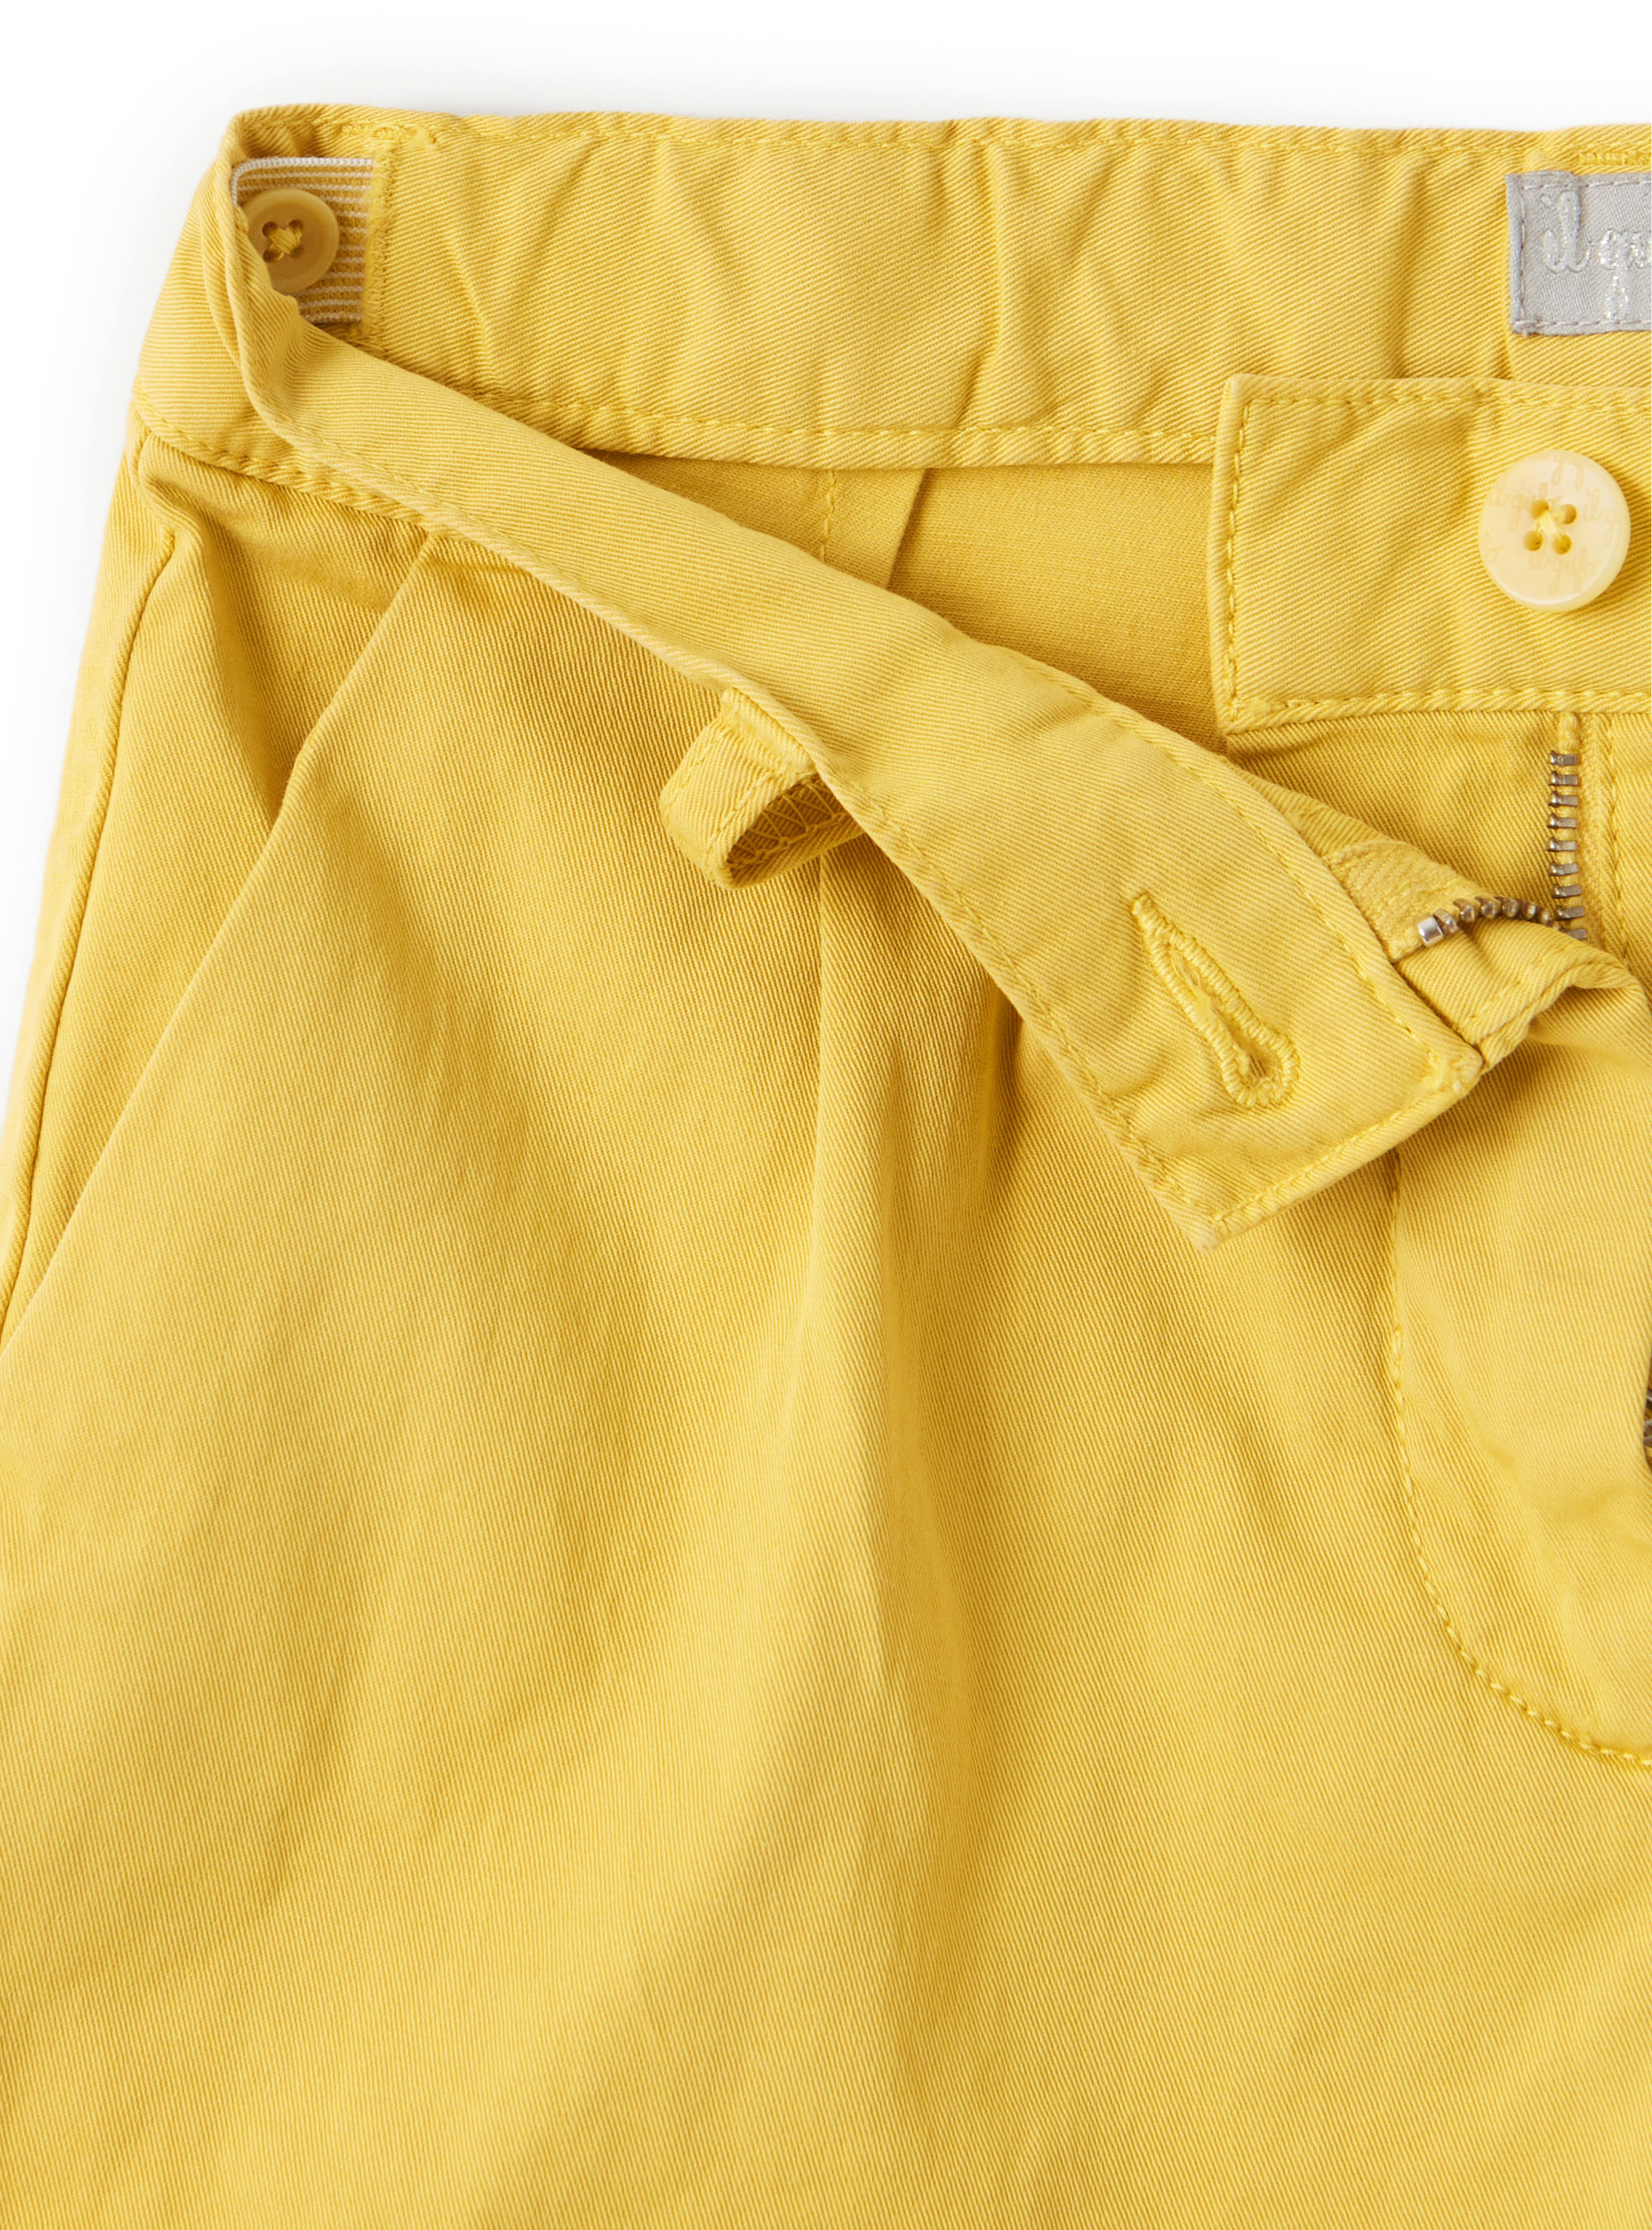 Shorts in gabardine di cotone giallo - Giallo | Il Gufo